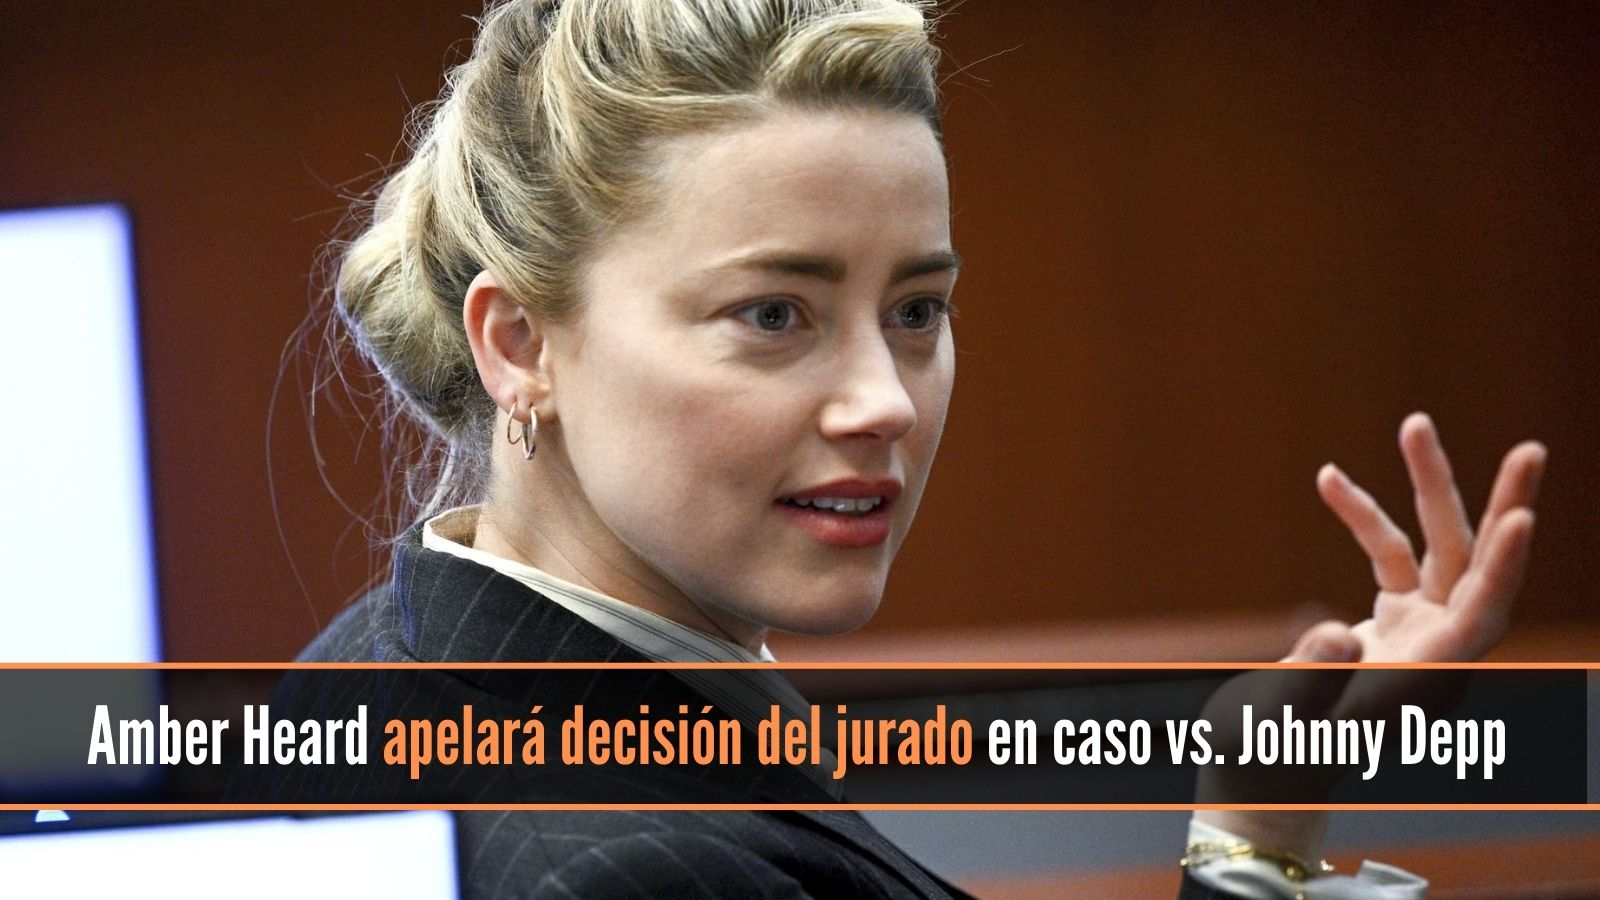 Amber Heard apelará decisión del jurado en caso contra Johnny Depp